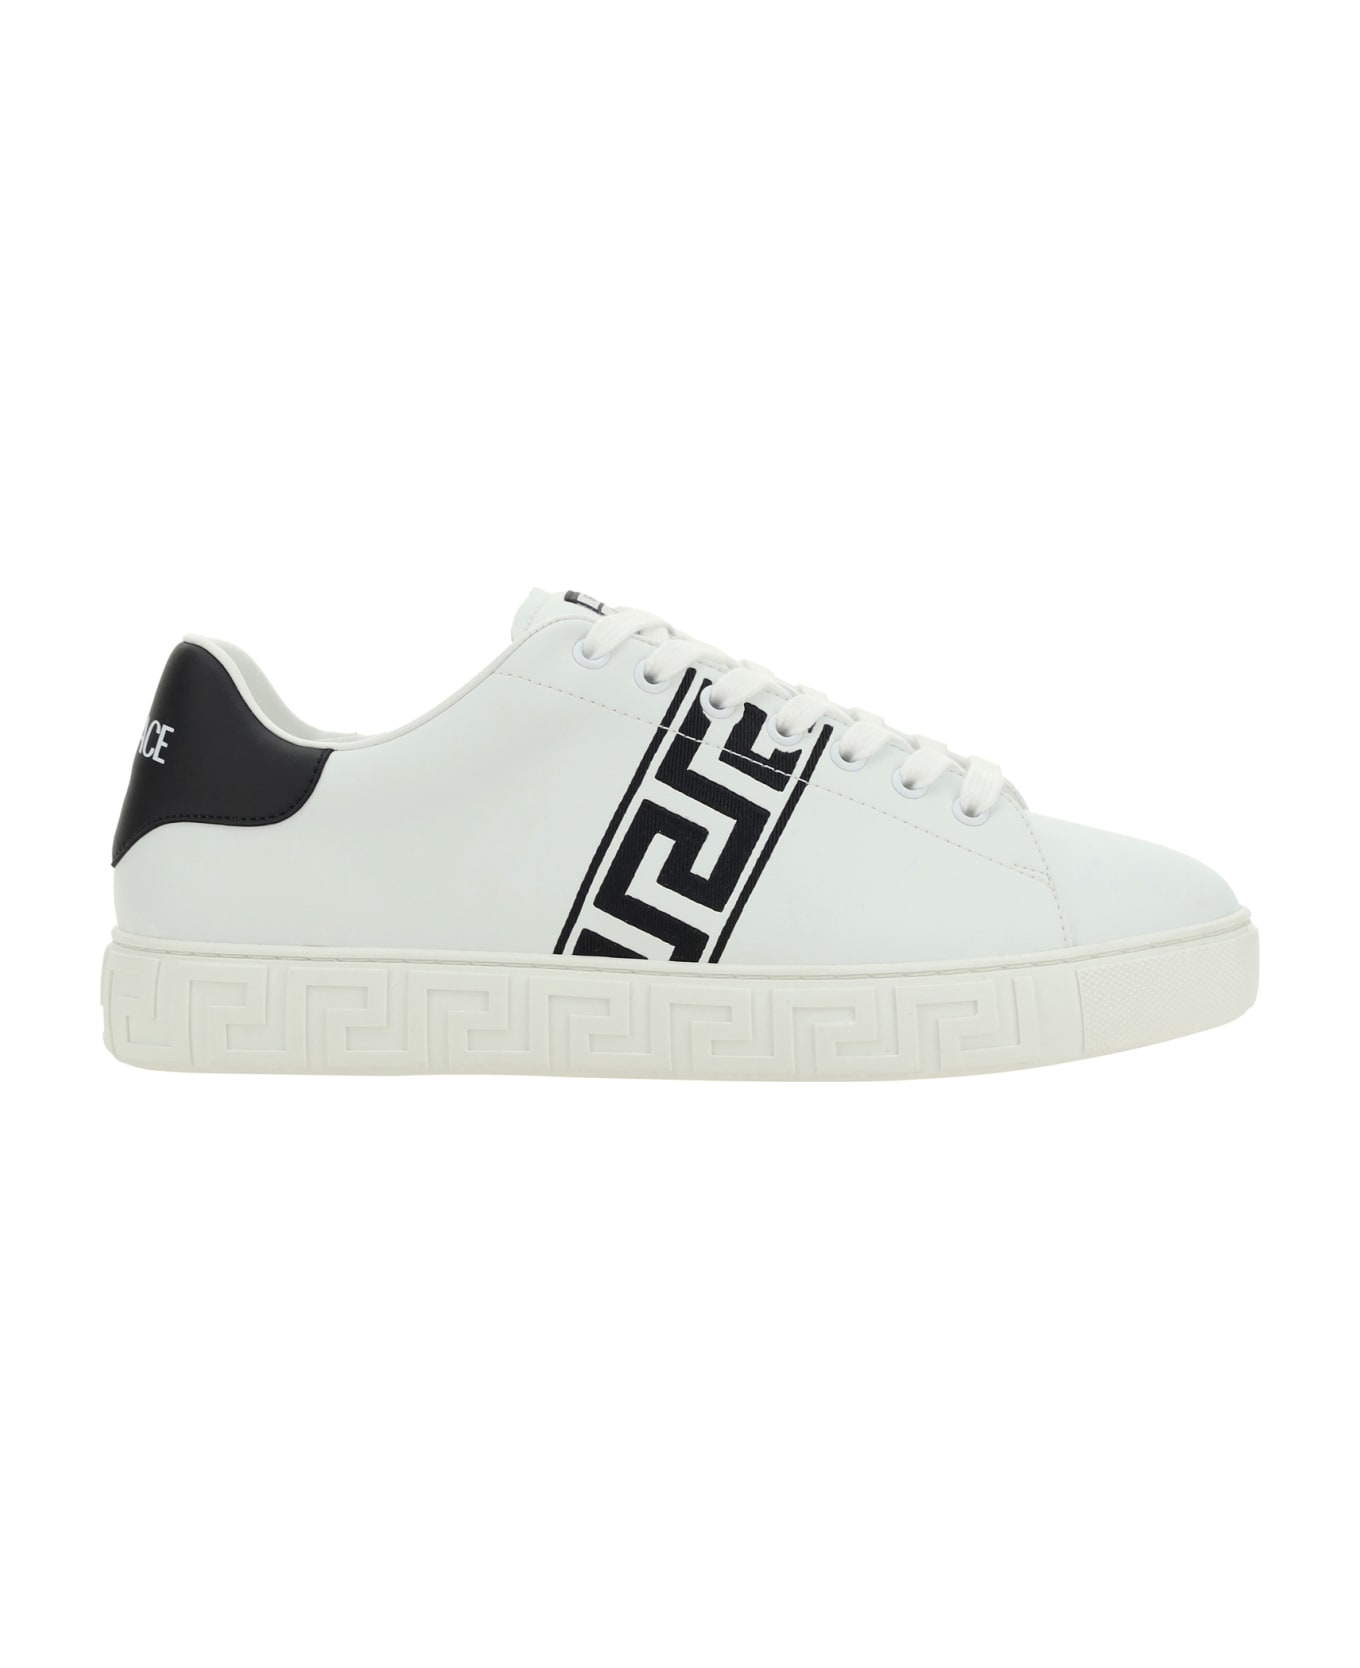 Versace Low Top Sneakers - WhiteBlack